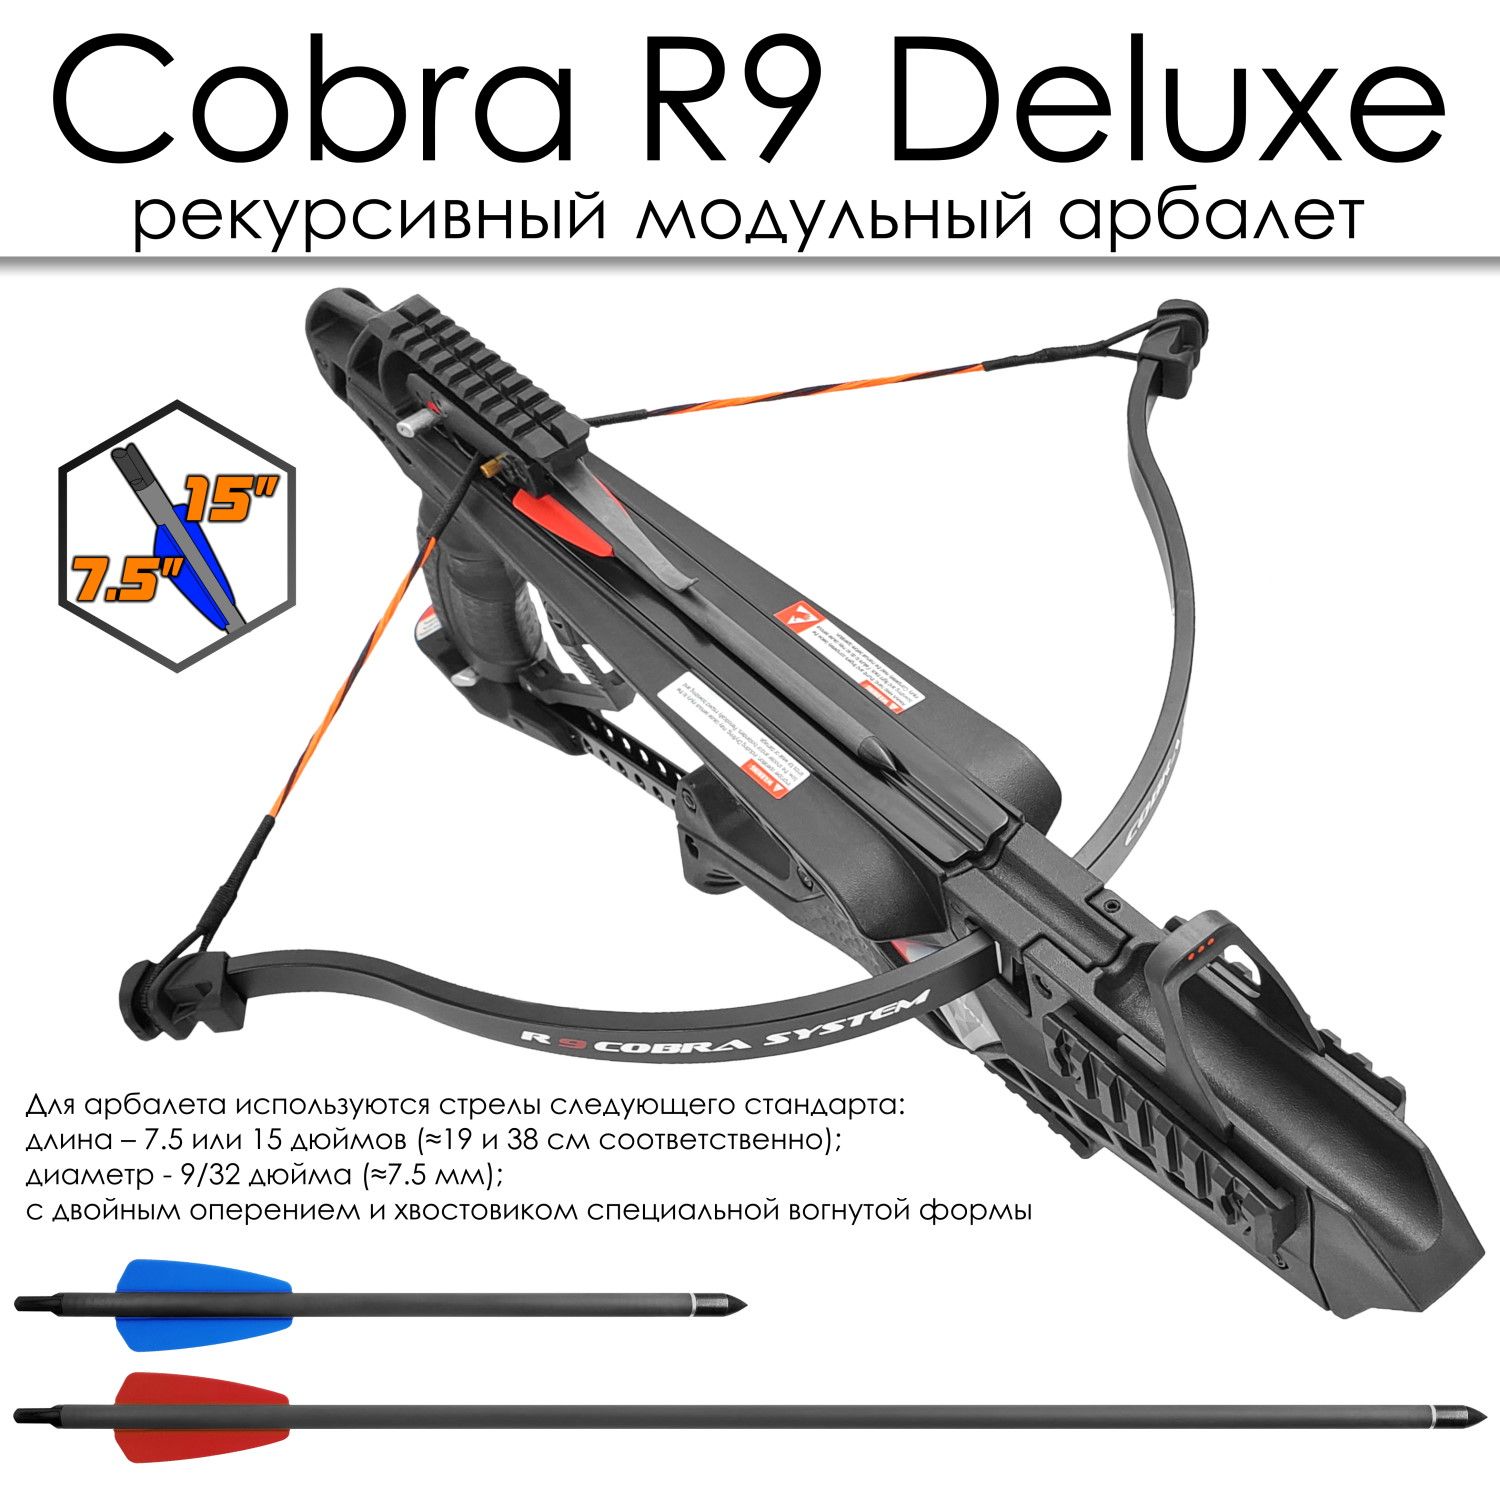 Ek cobra system r9. Cobra System r9 Deluxe. 43 Кгс для арбалетов. Запасные плечи для арбалета Ek Cobra System r9 (RX).